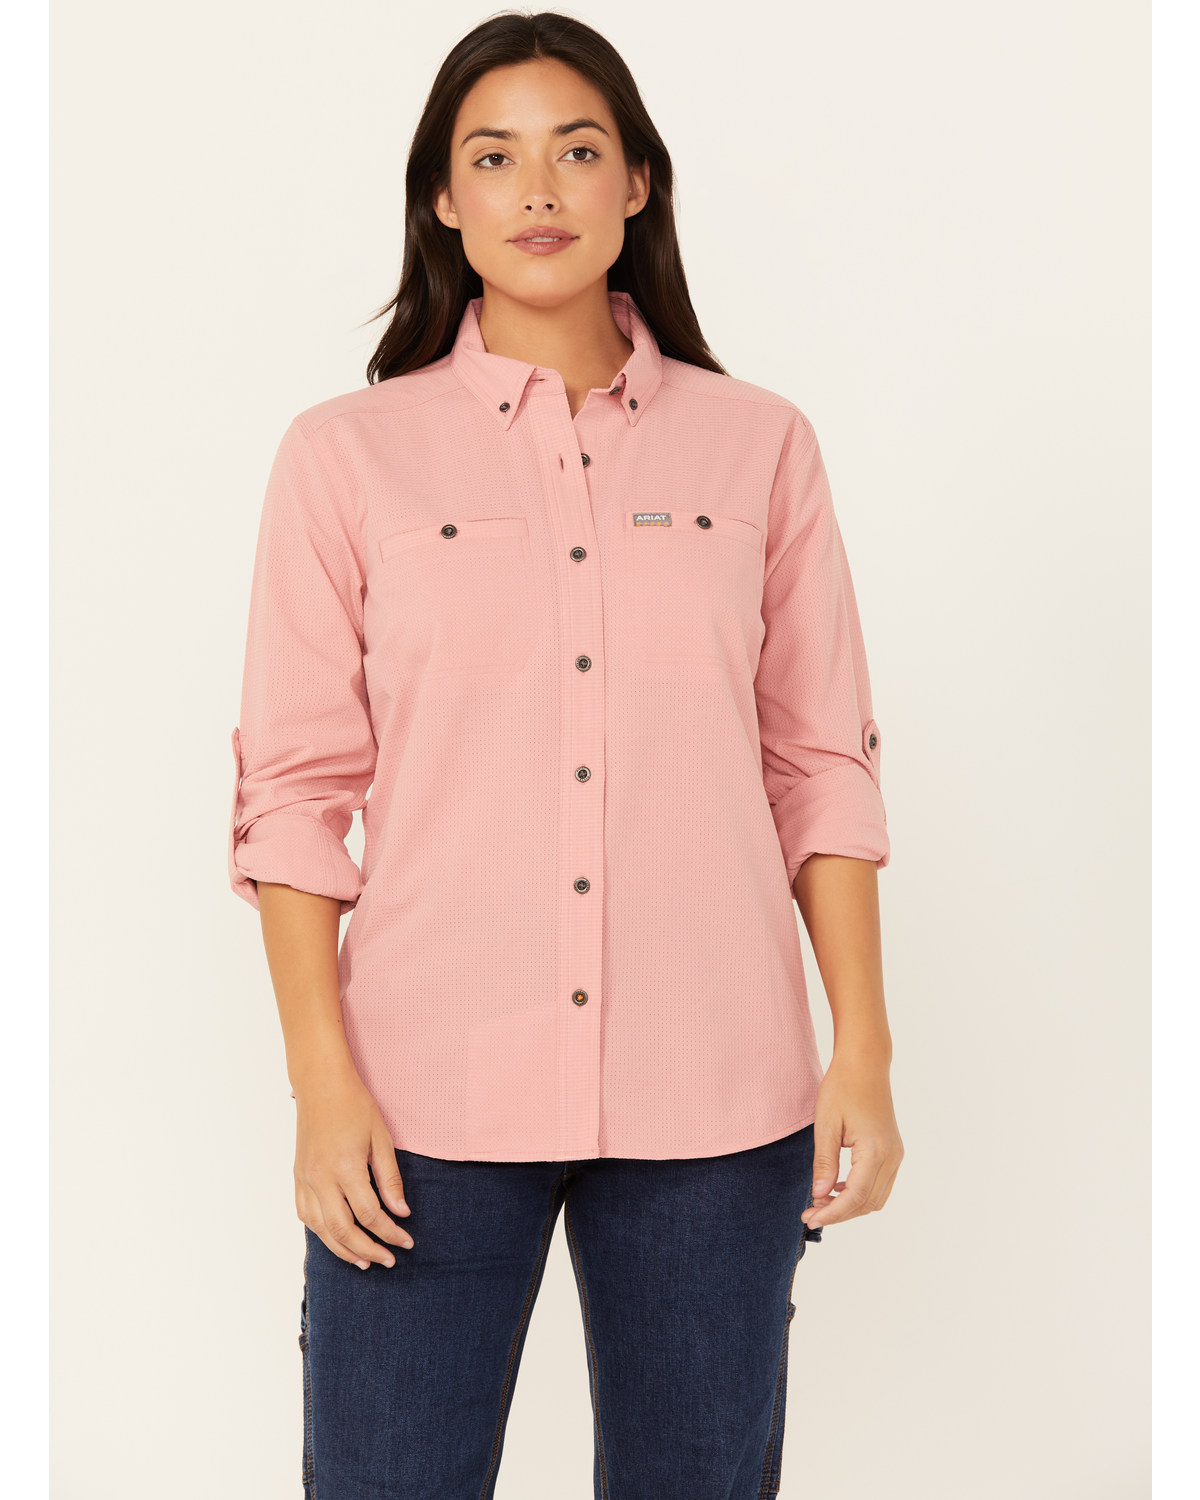 Ariat Women's Rebar Made Tough Long Sleeve Button-Down Work Shirt